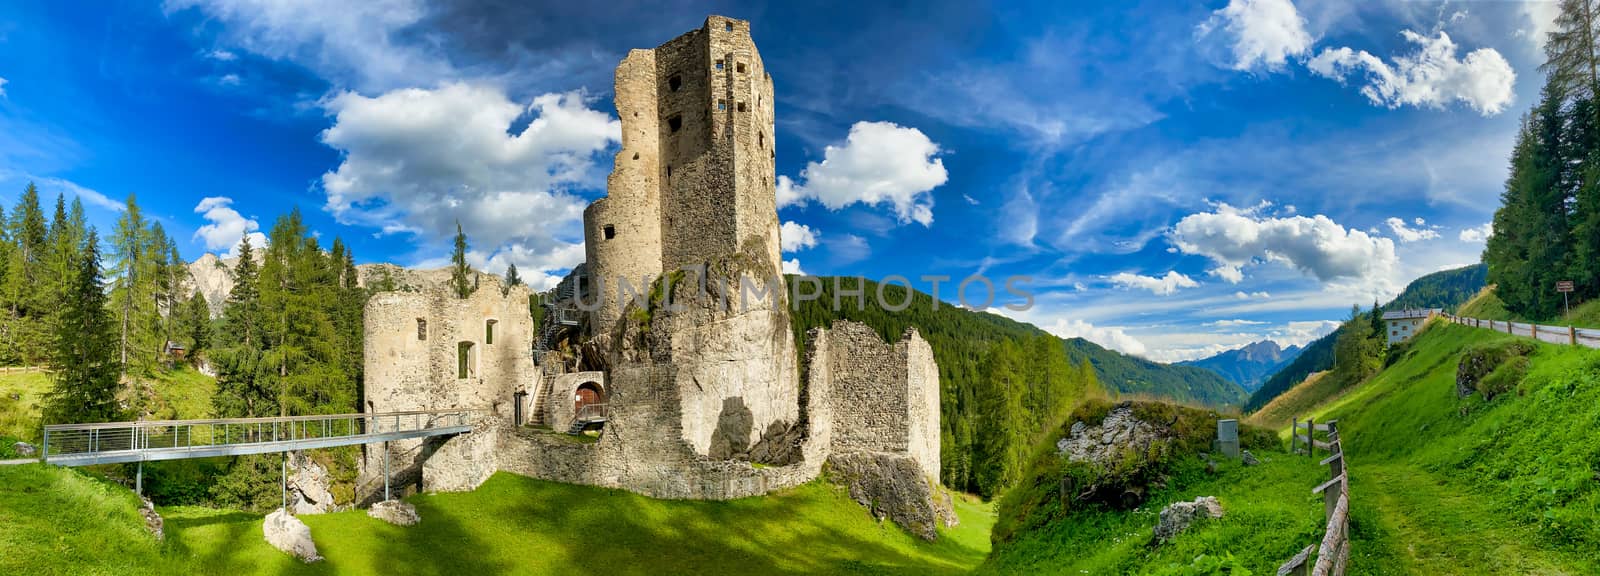 Beautiful Andraz Castle on Italian Alps. Summer season.